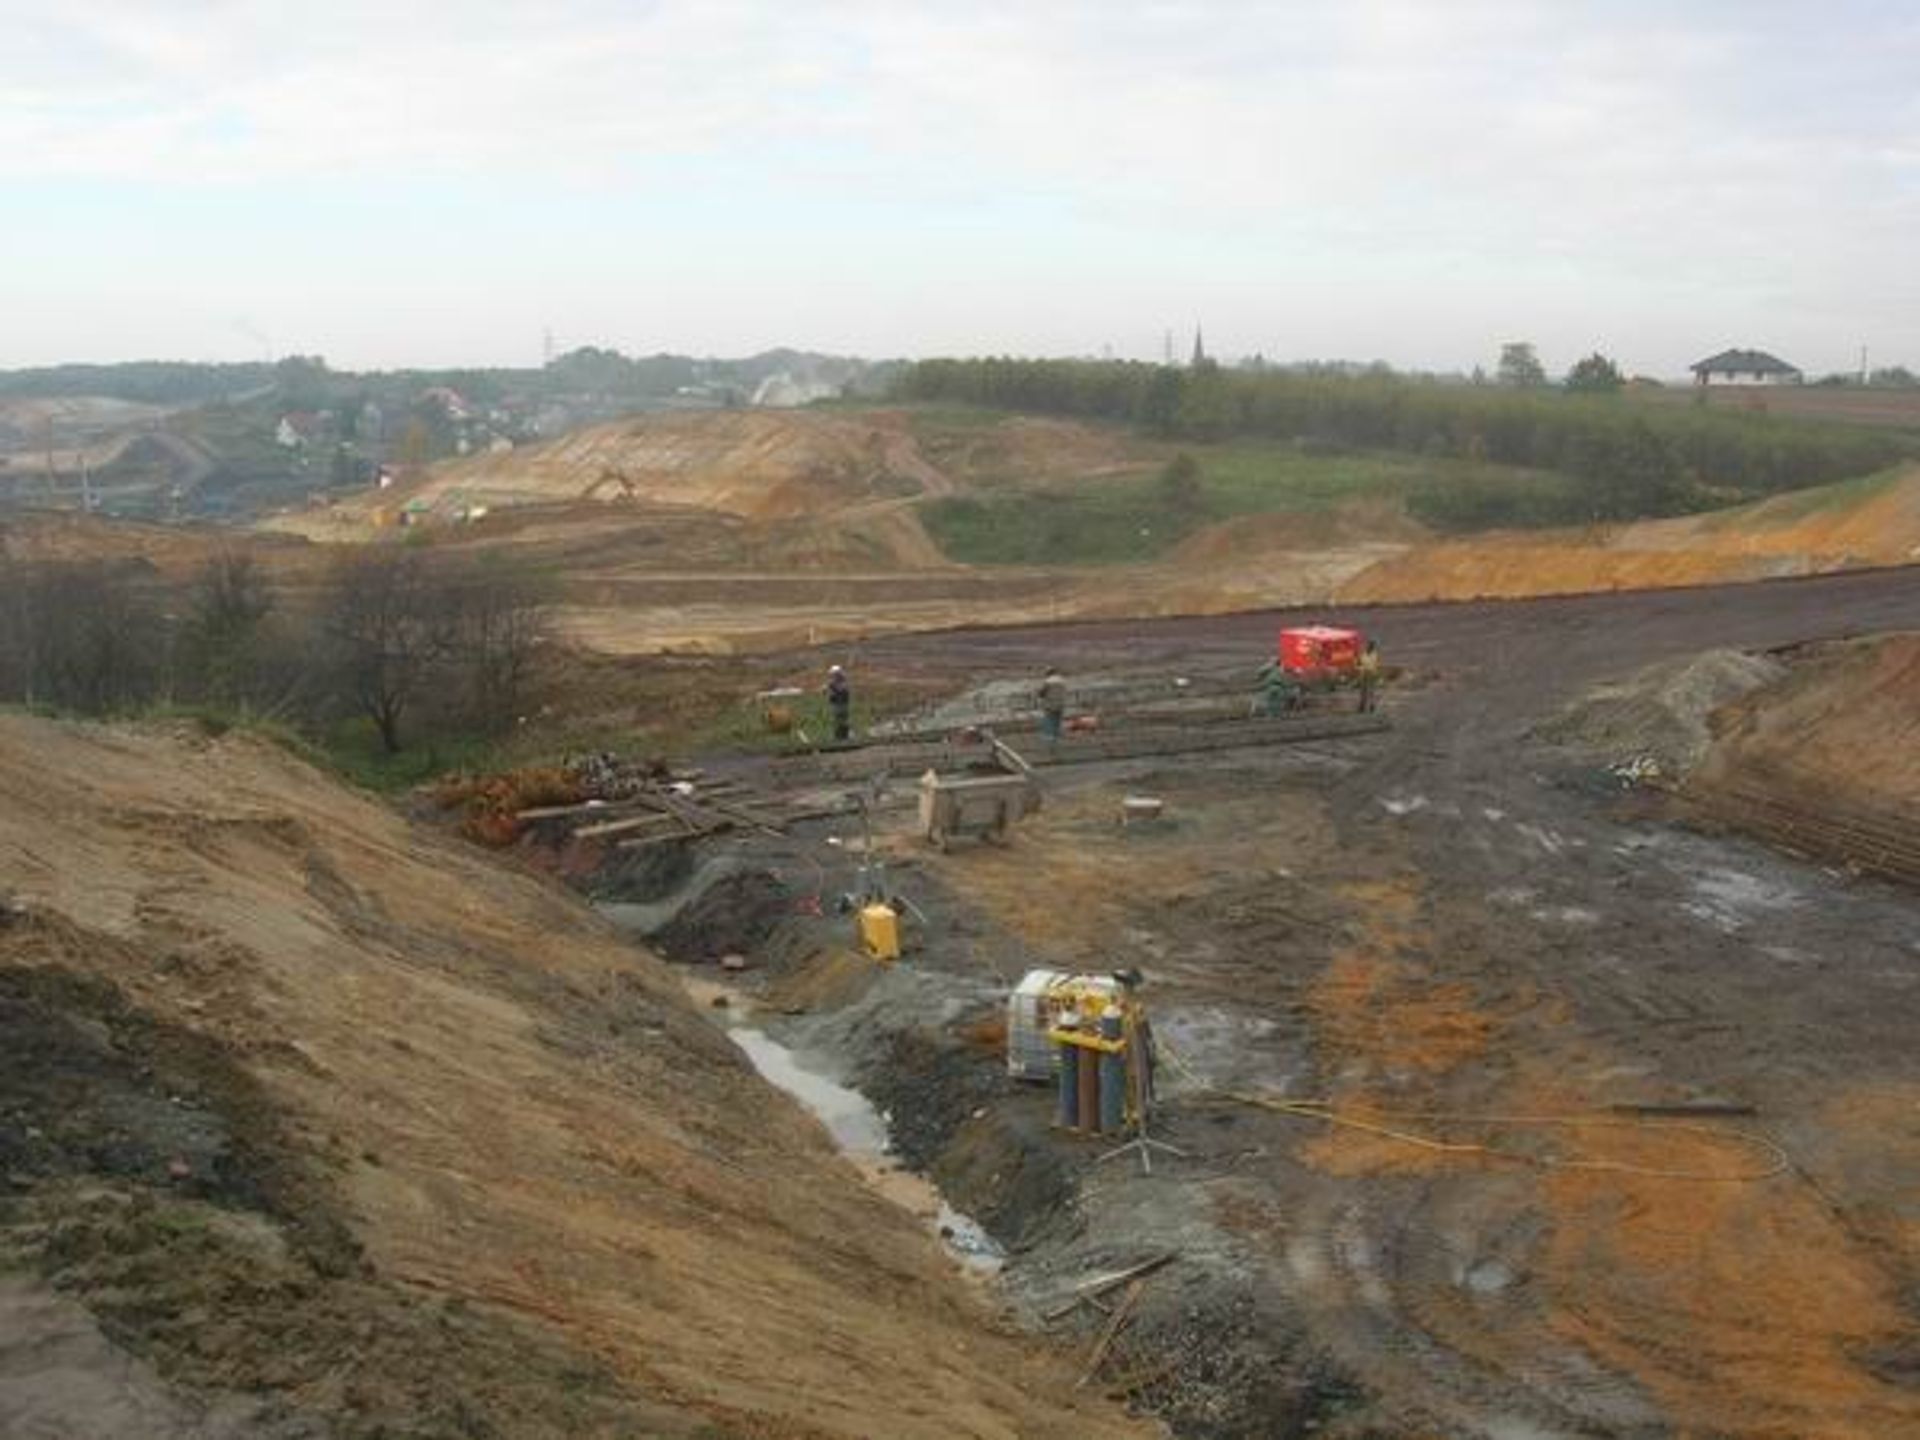  SRB Civil Engineering przejmuje od PBG prace asfaltowane na odcinku Czerniewice-Brzezie